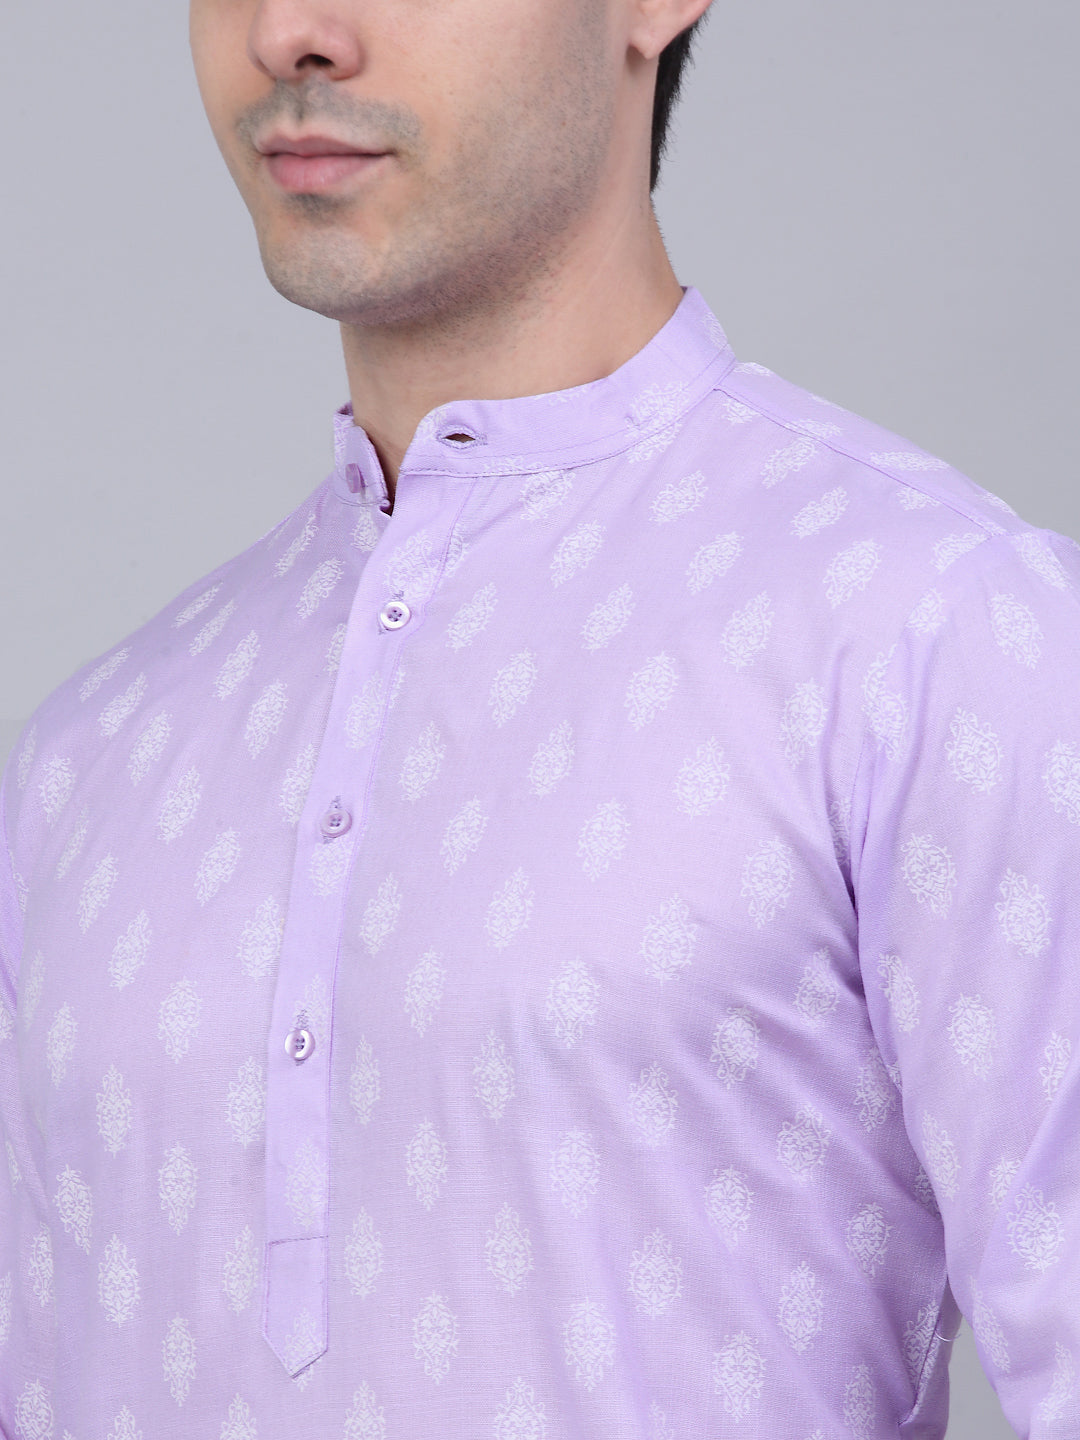 Men's Cotton Floral printed kurta Pyjama Set ( JOKP 650Purple )